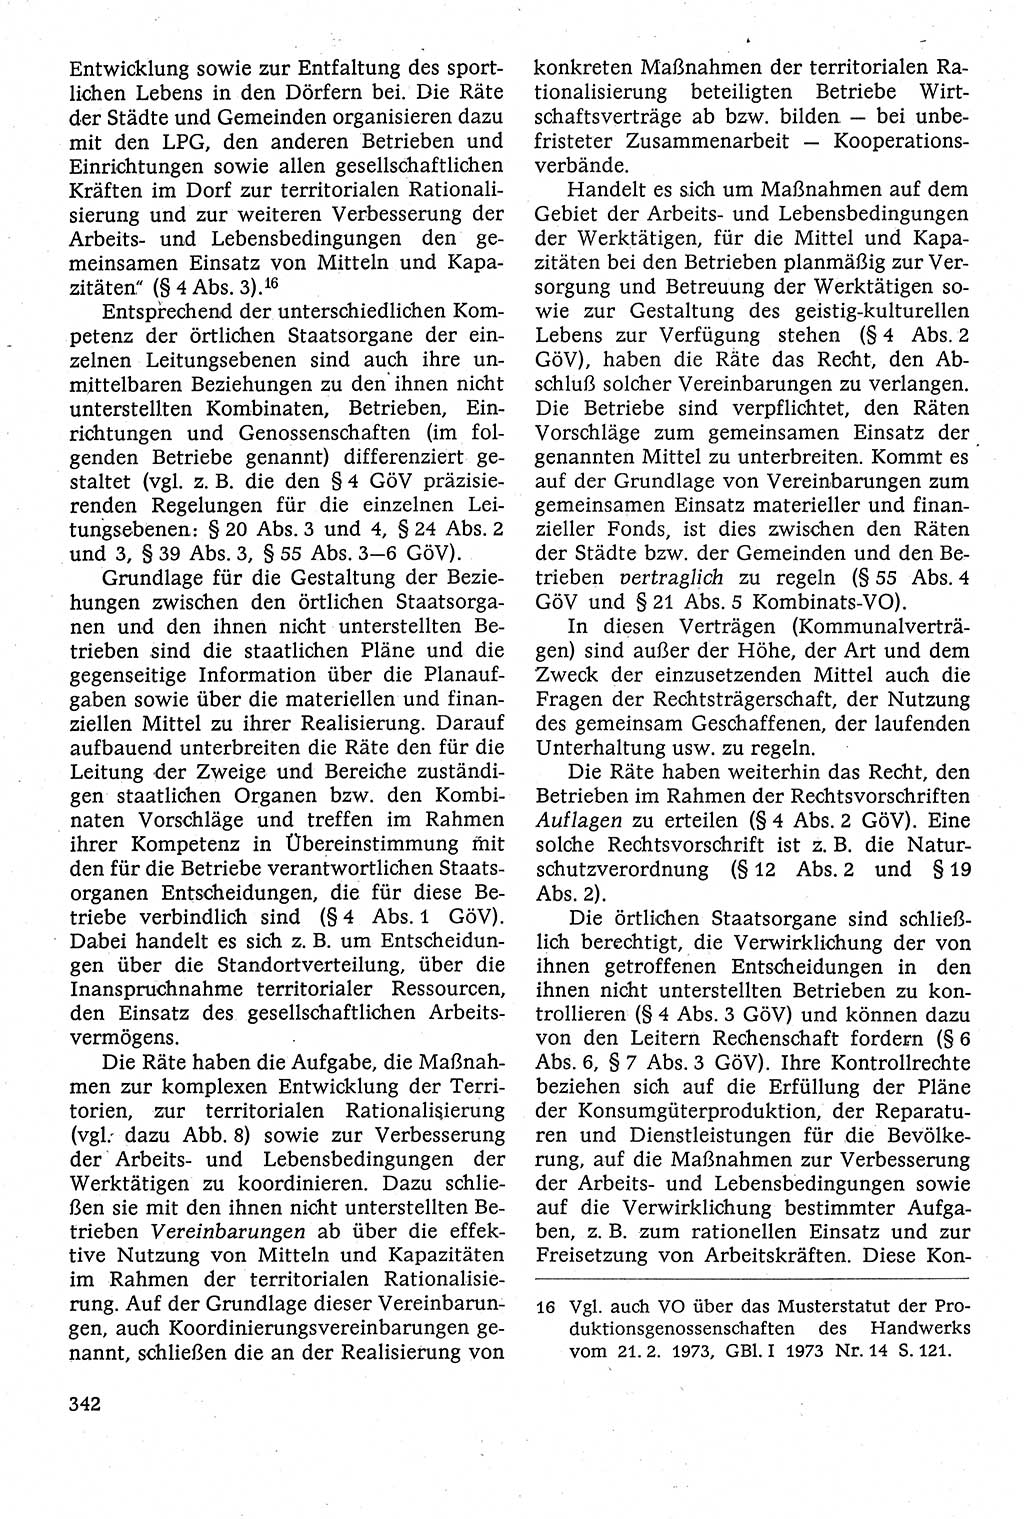 Staatsrecht der DDR [Deutsche Demokratische Republik (DDR)], Lehrbuch 1984, Seite 342 (St.-R. DDR Lb. 1984, S. 342)